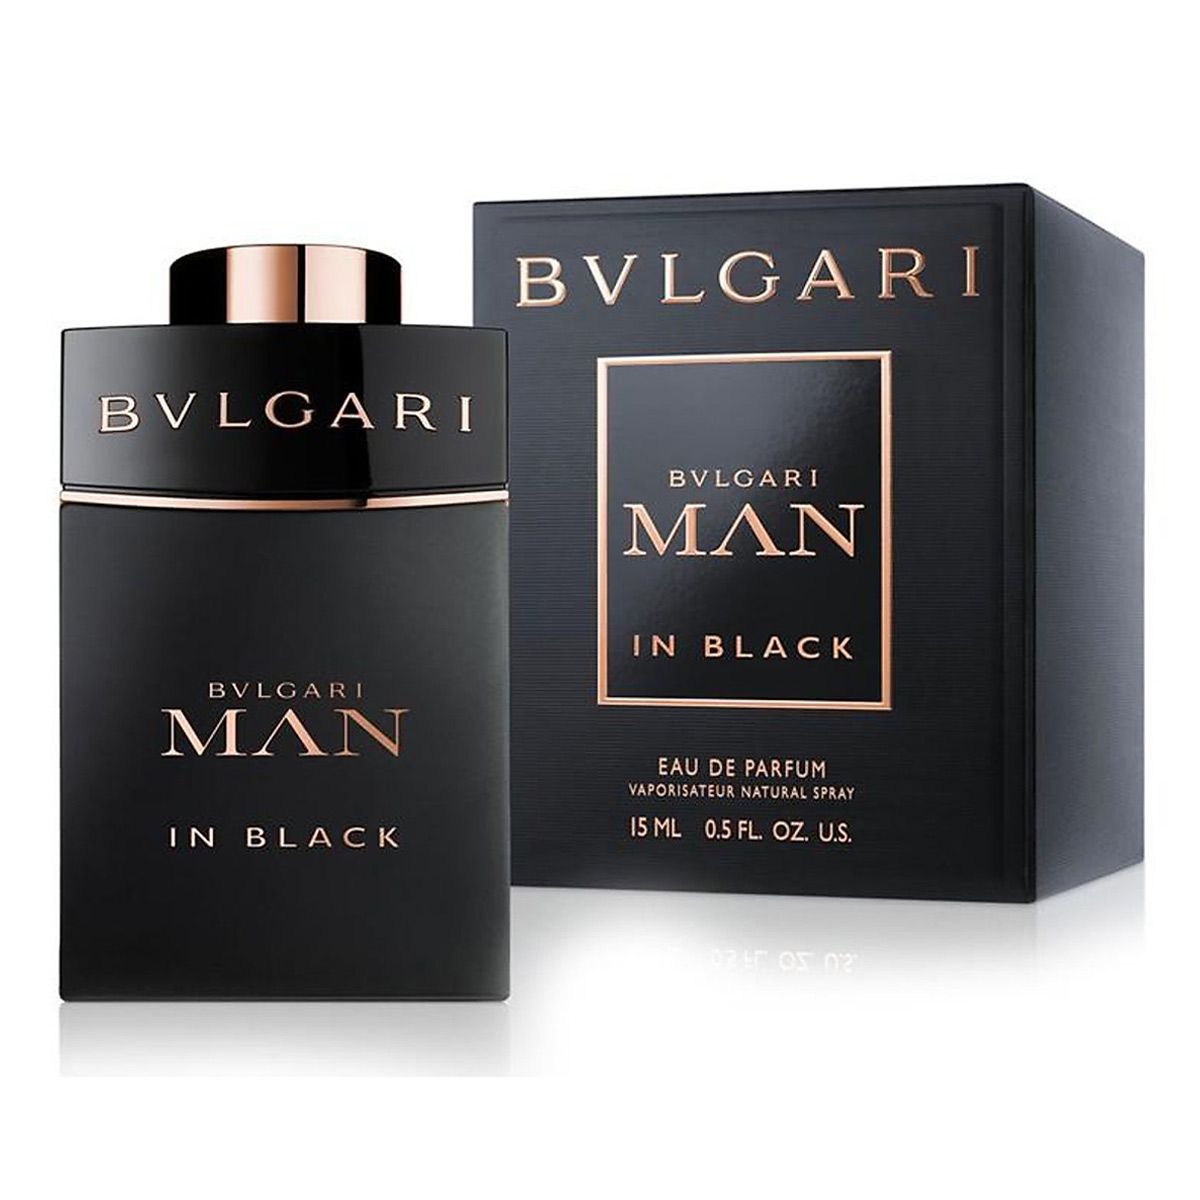  Bvlgari Man in Black Travel Size 